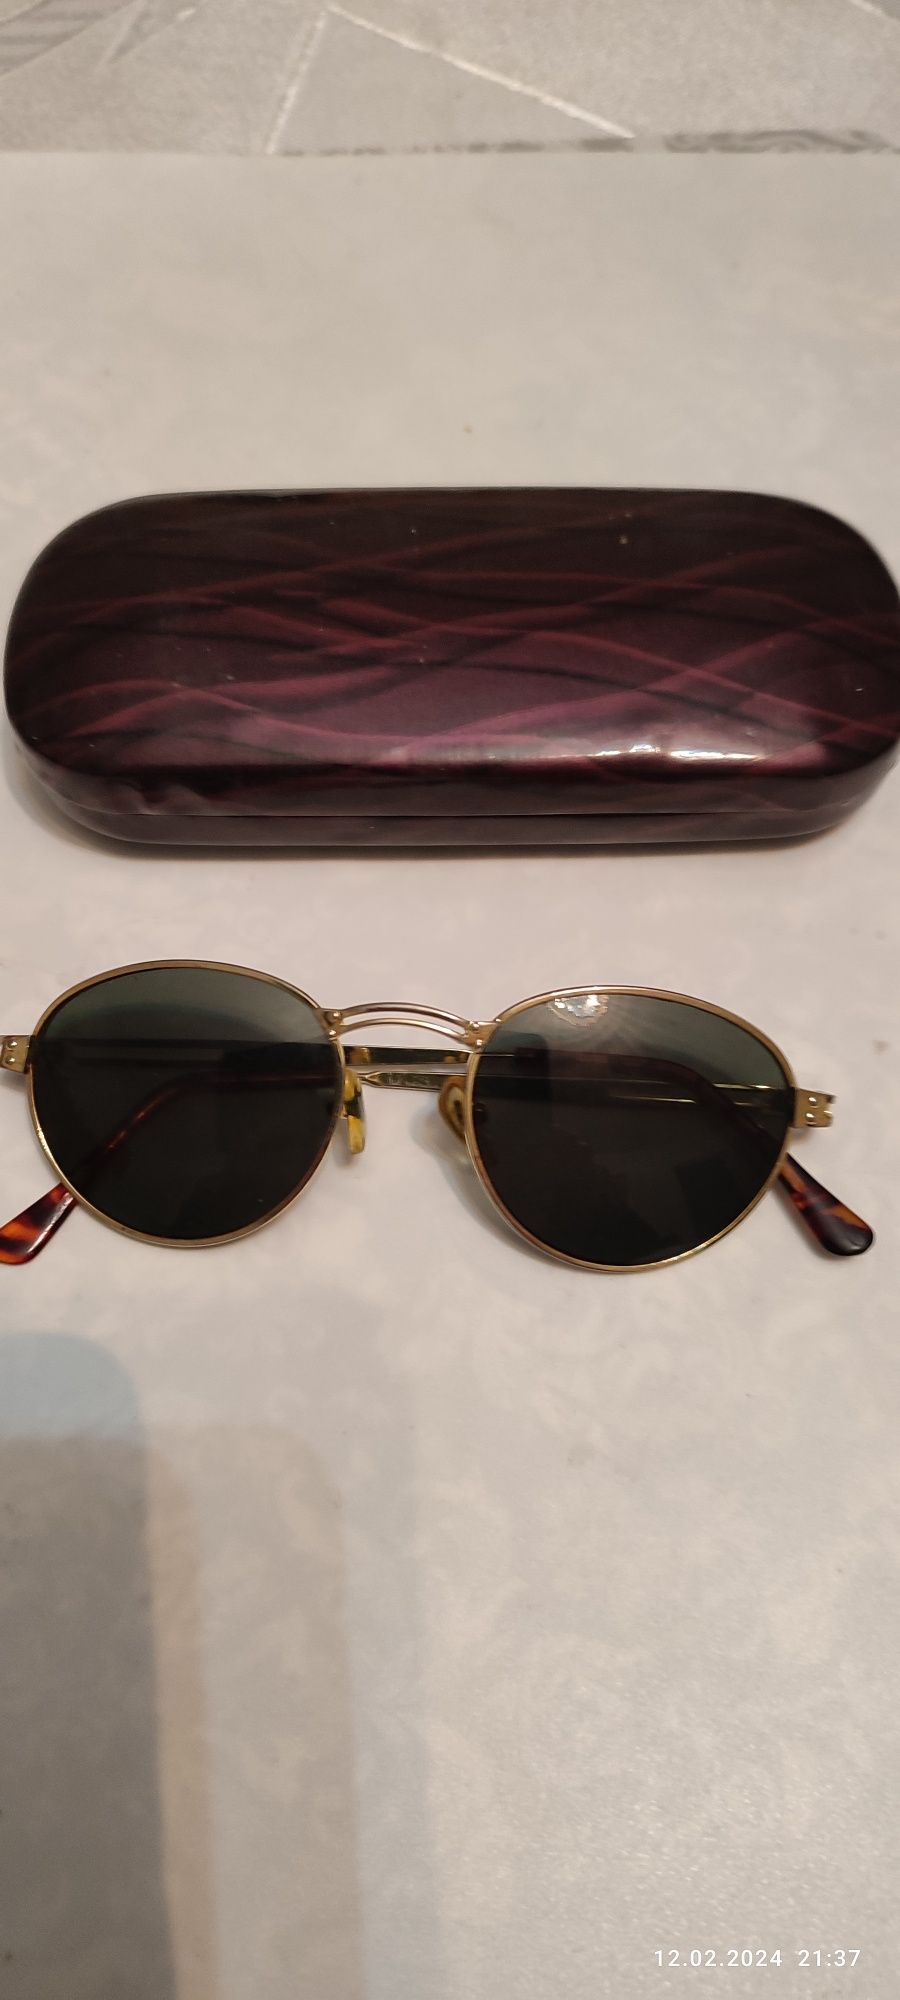 Stare okulary przeciwsłoneczne korekcyjne